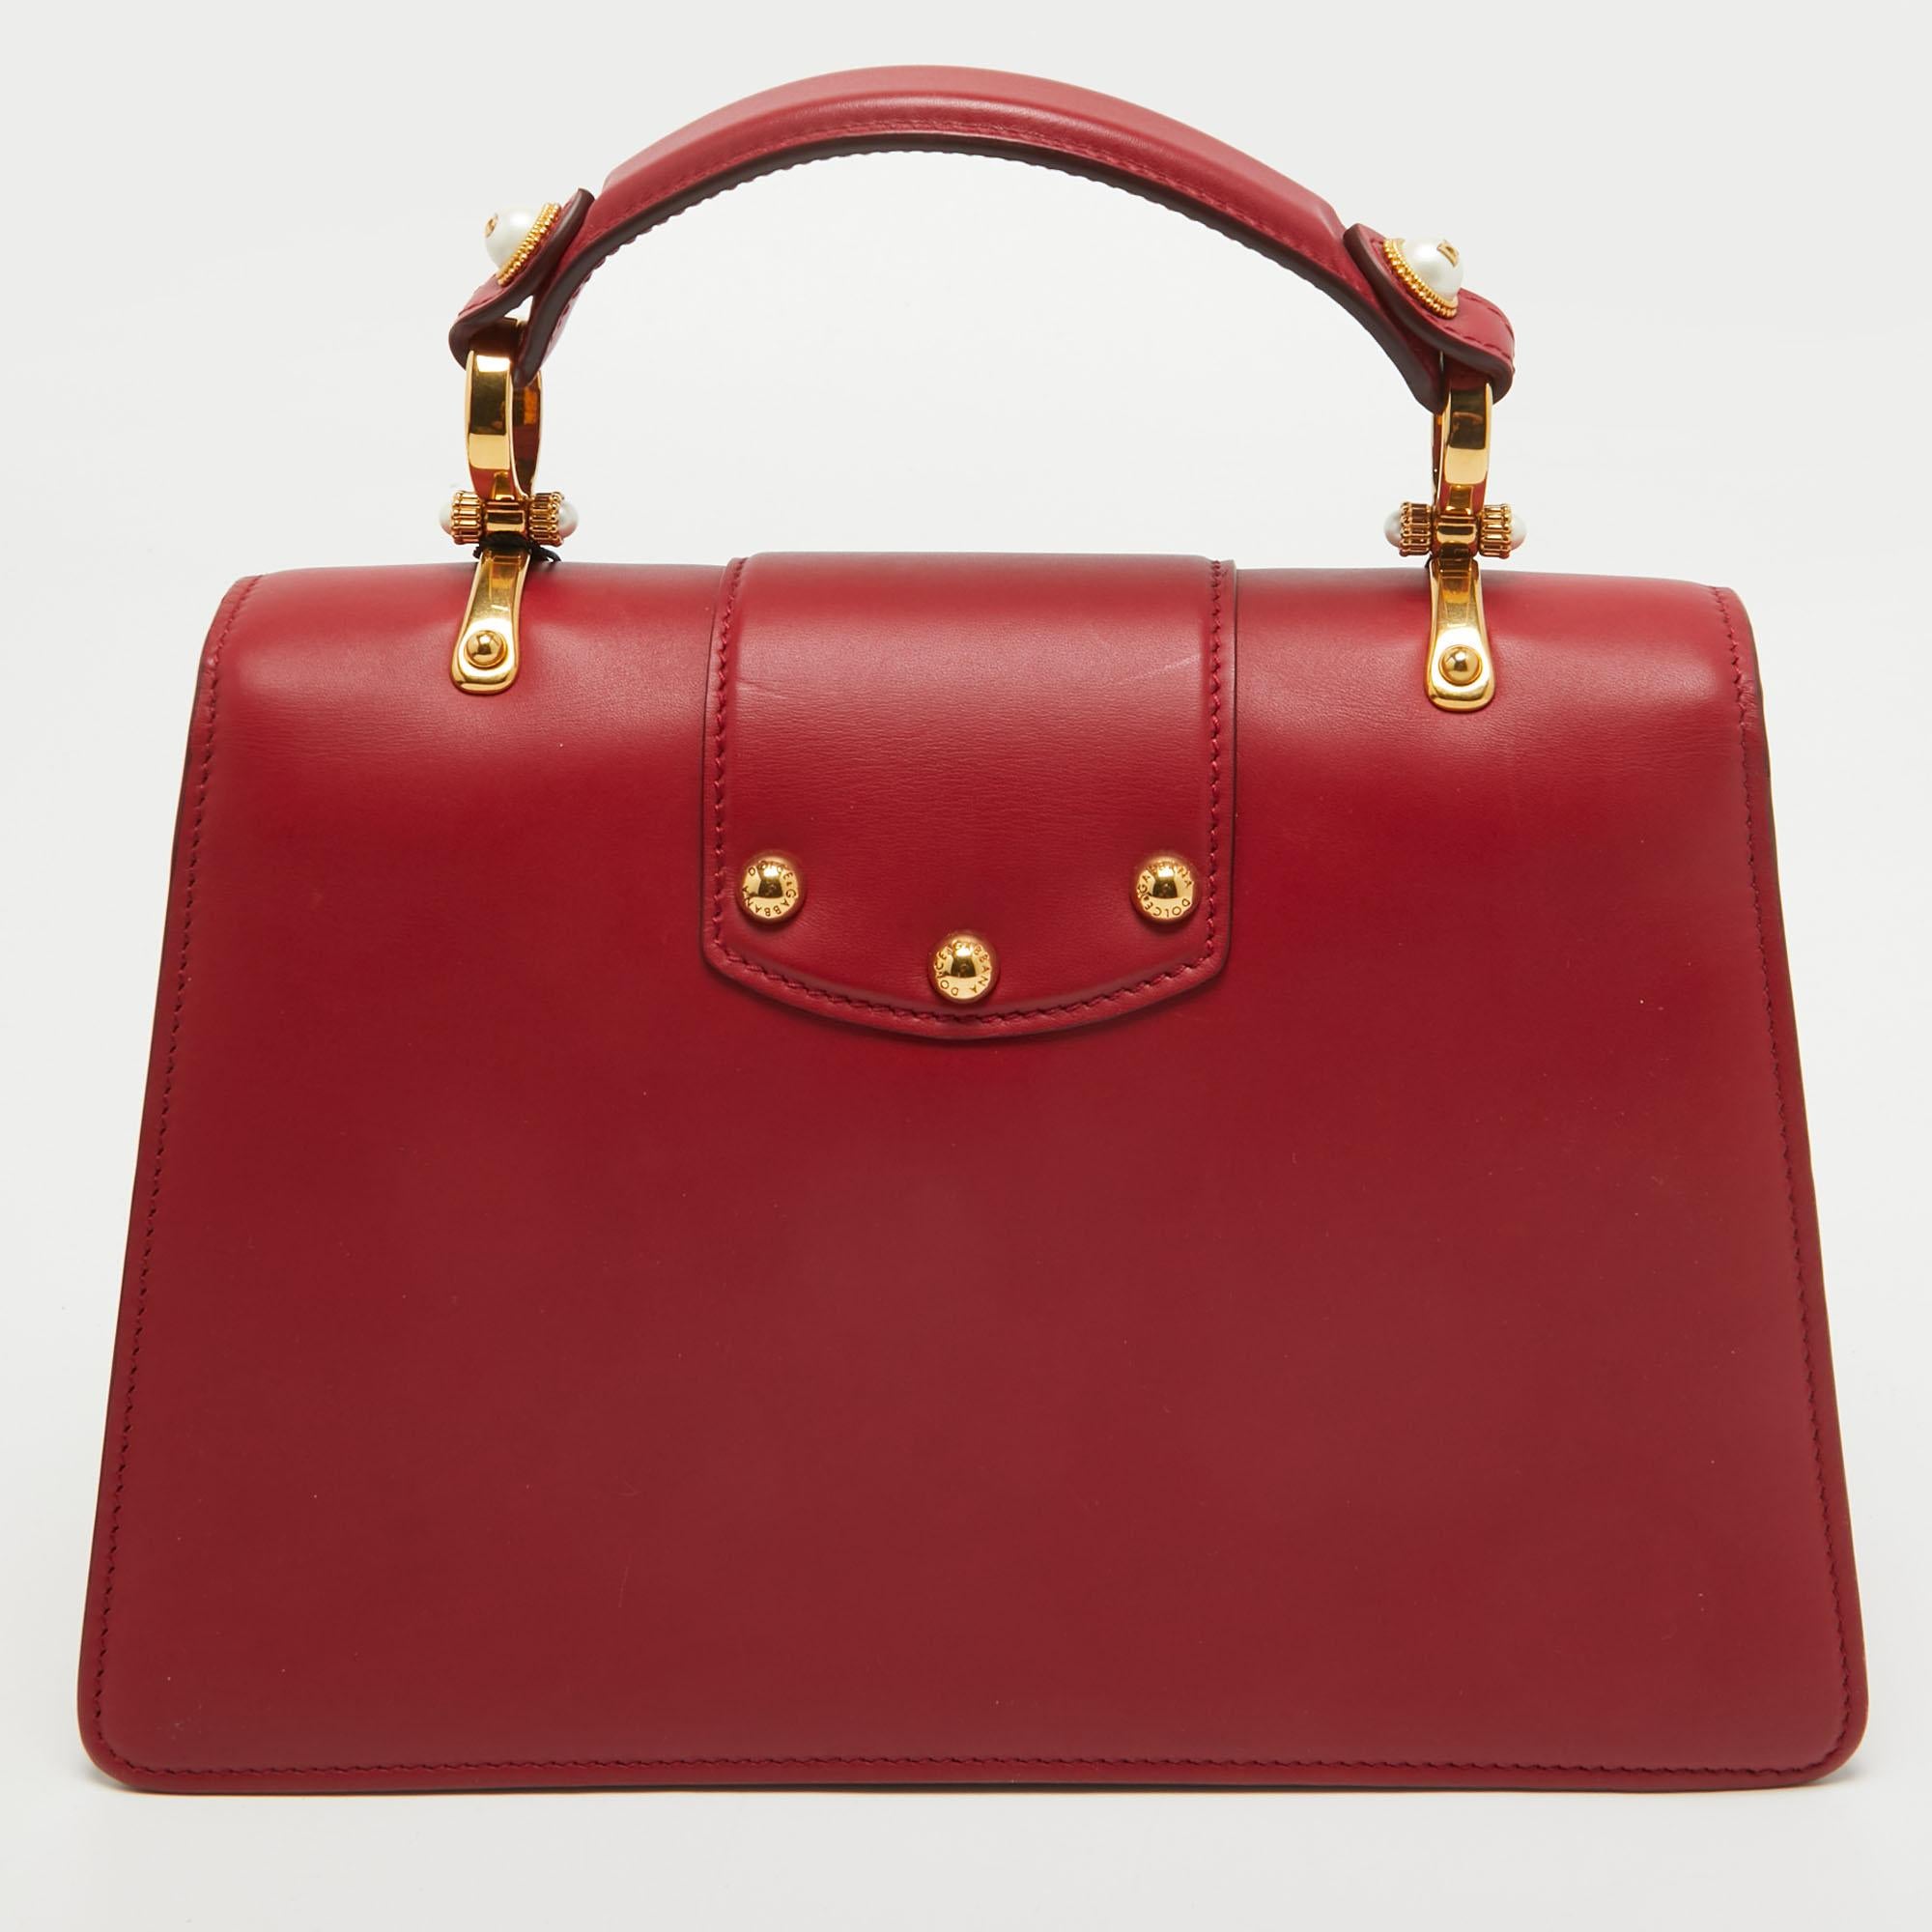 Bien structuré et très stylé, ce sac DG Amore de Dolce & Gabbana mérite d'être le vôtre ! Confectionné en cuir rouge, il est doté d'une poignée supérieure et d'une bandoulière amovible. Il est également doté d'un logo embelli en tons dorés sur le